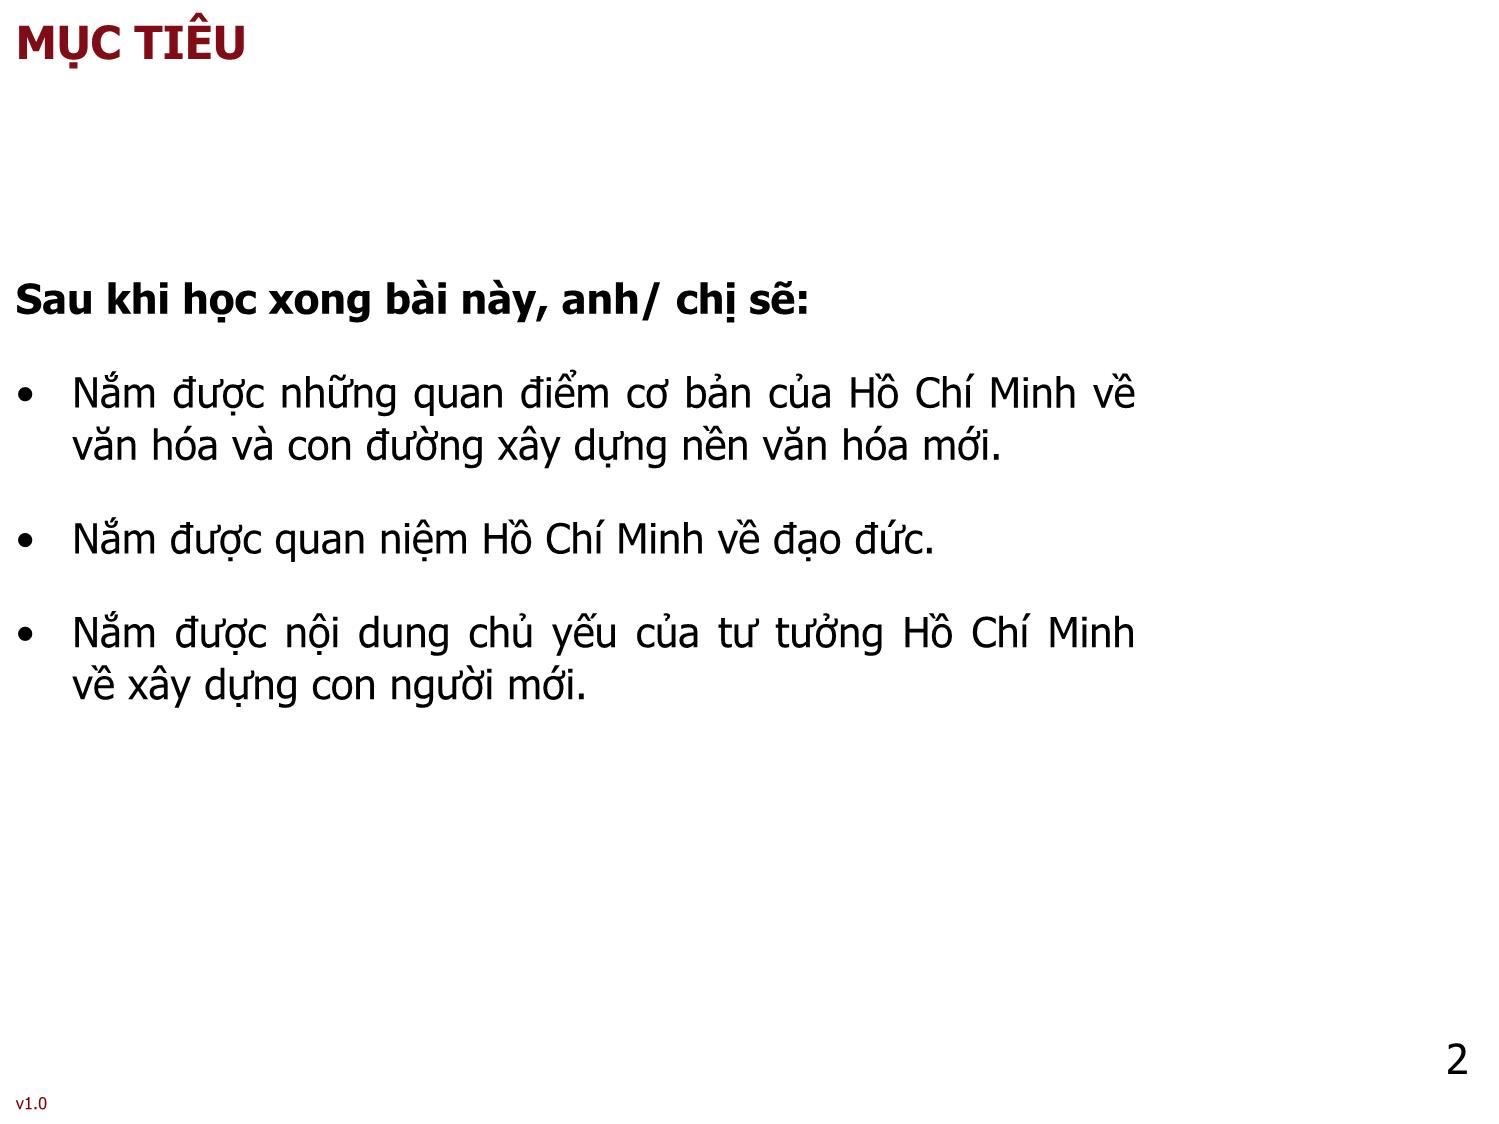 Bài giảng Tư tưởng Hồ Chí Minh - Bài 7: Tư tưởng Hồ Chí Minh về văn hóa, đạo đức và xây dựng con người mới - Phạm Ngọc Anh trang 2